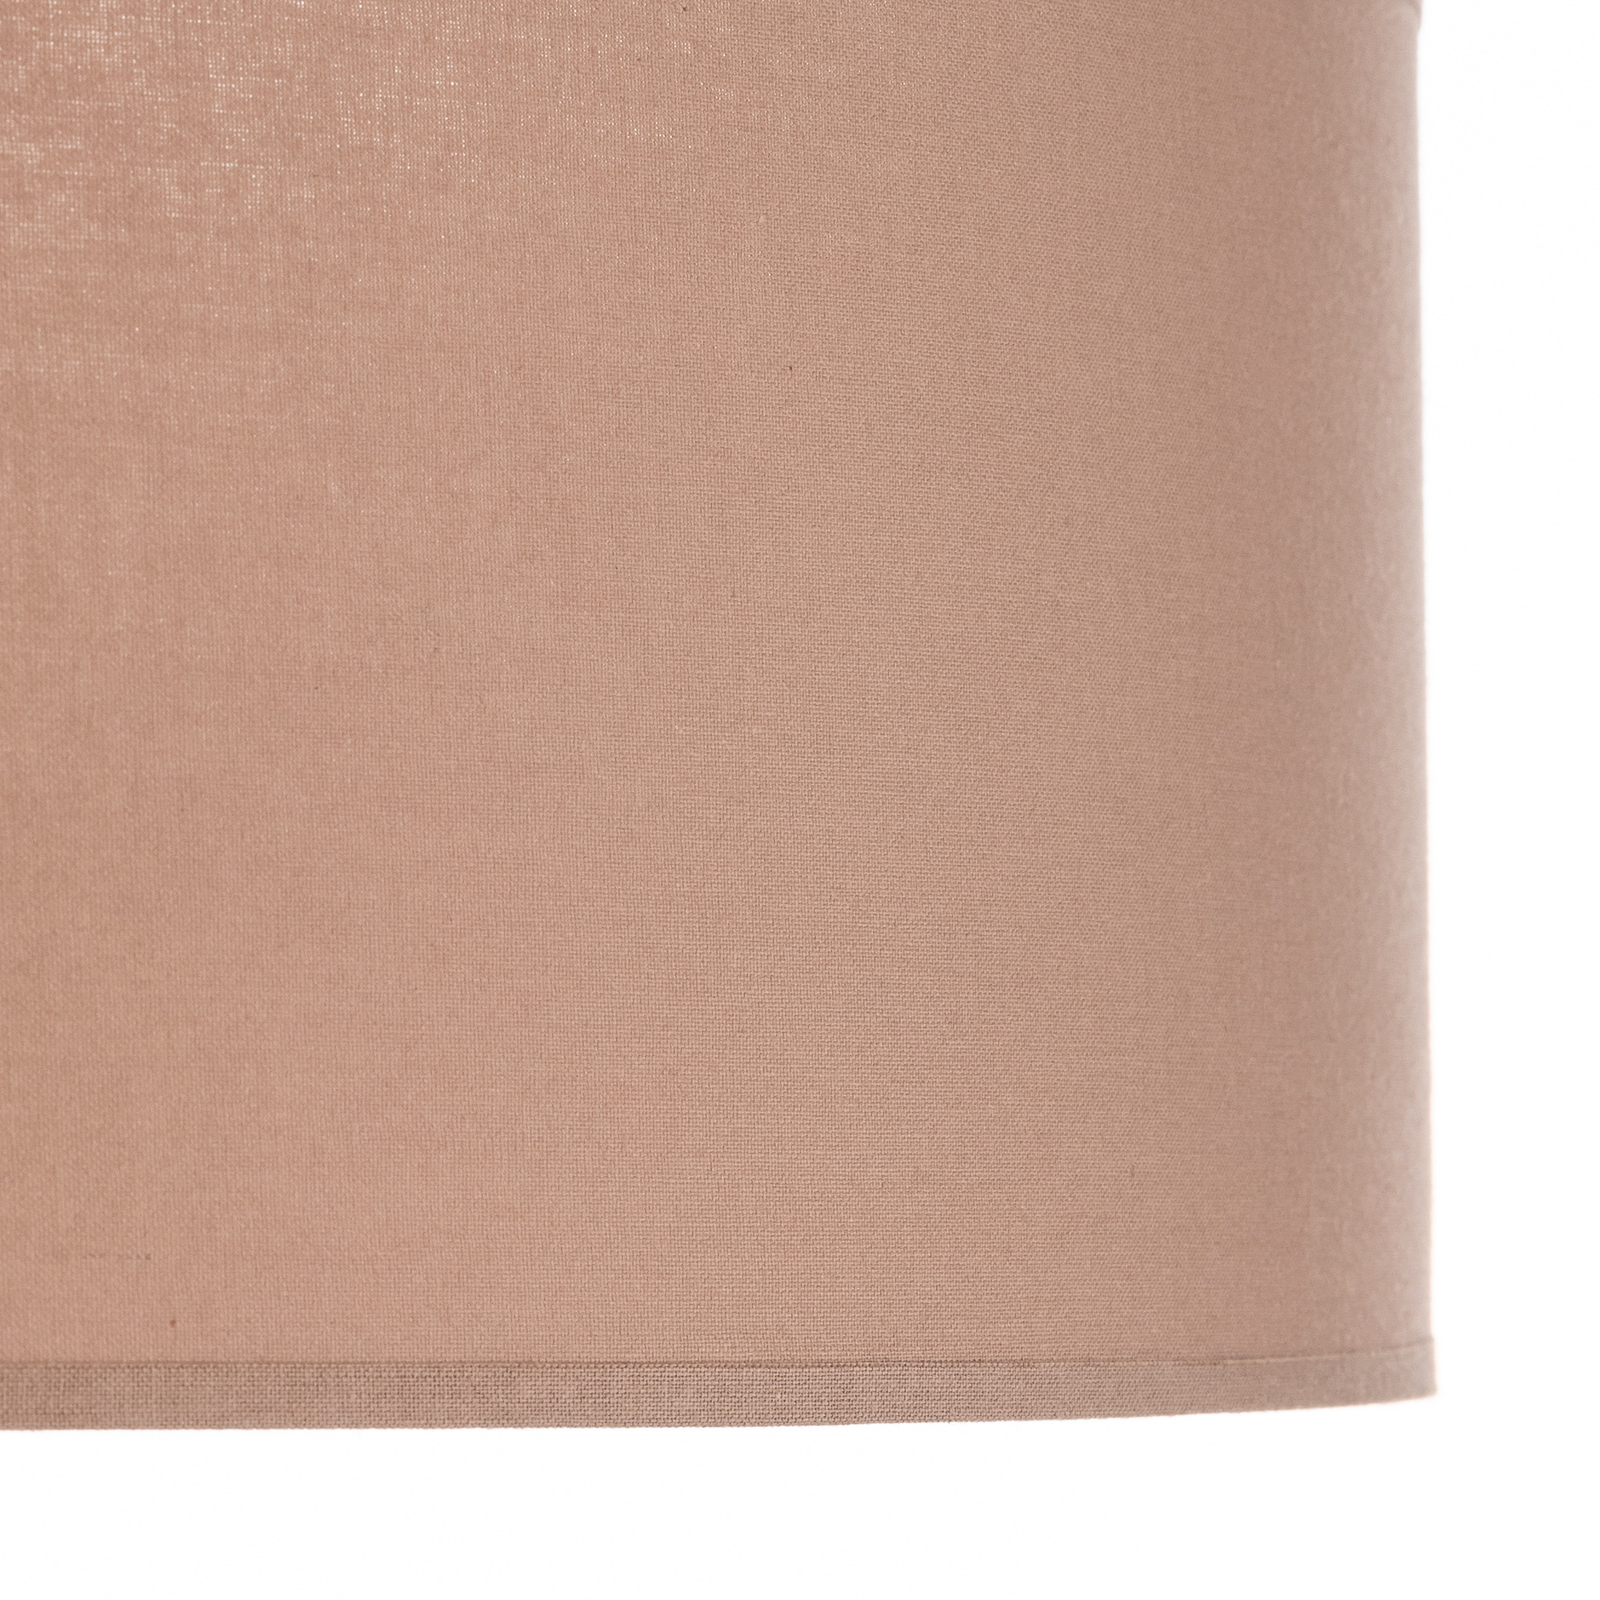 Euluna Roller couverture, abat-jour en tissu cappuccino Ø50cm